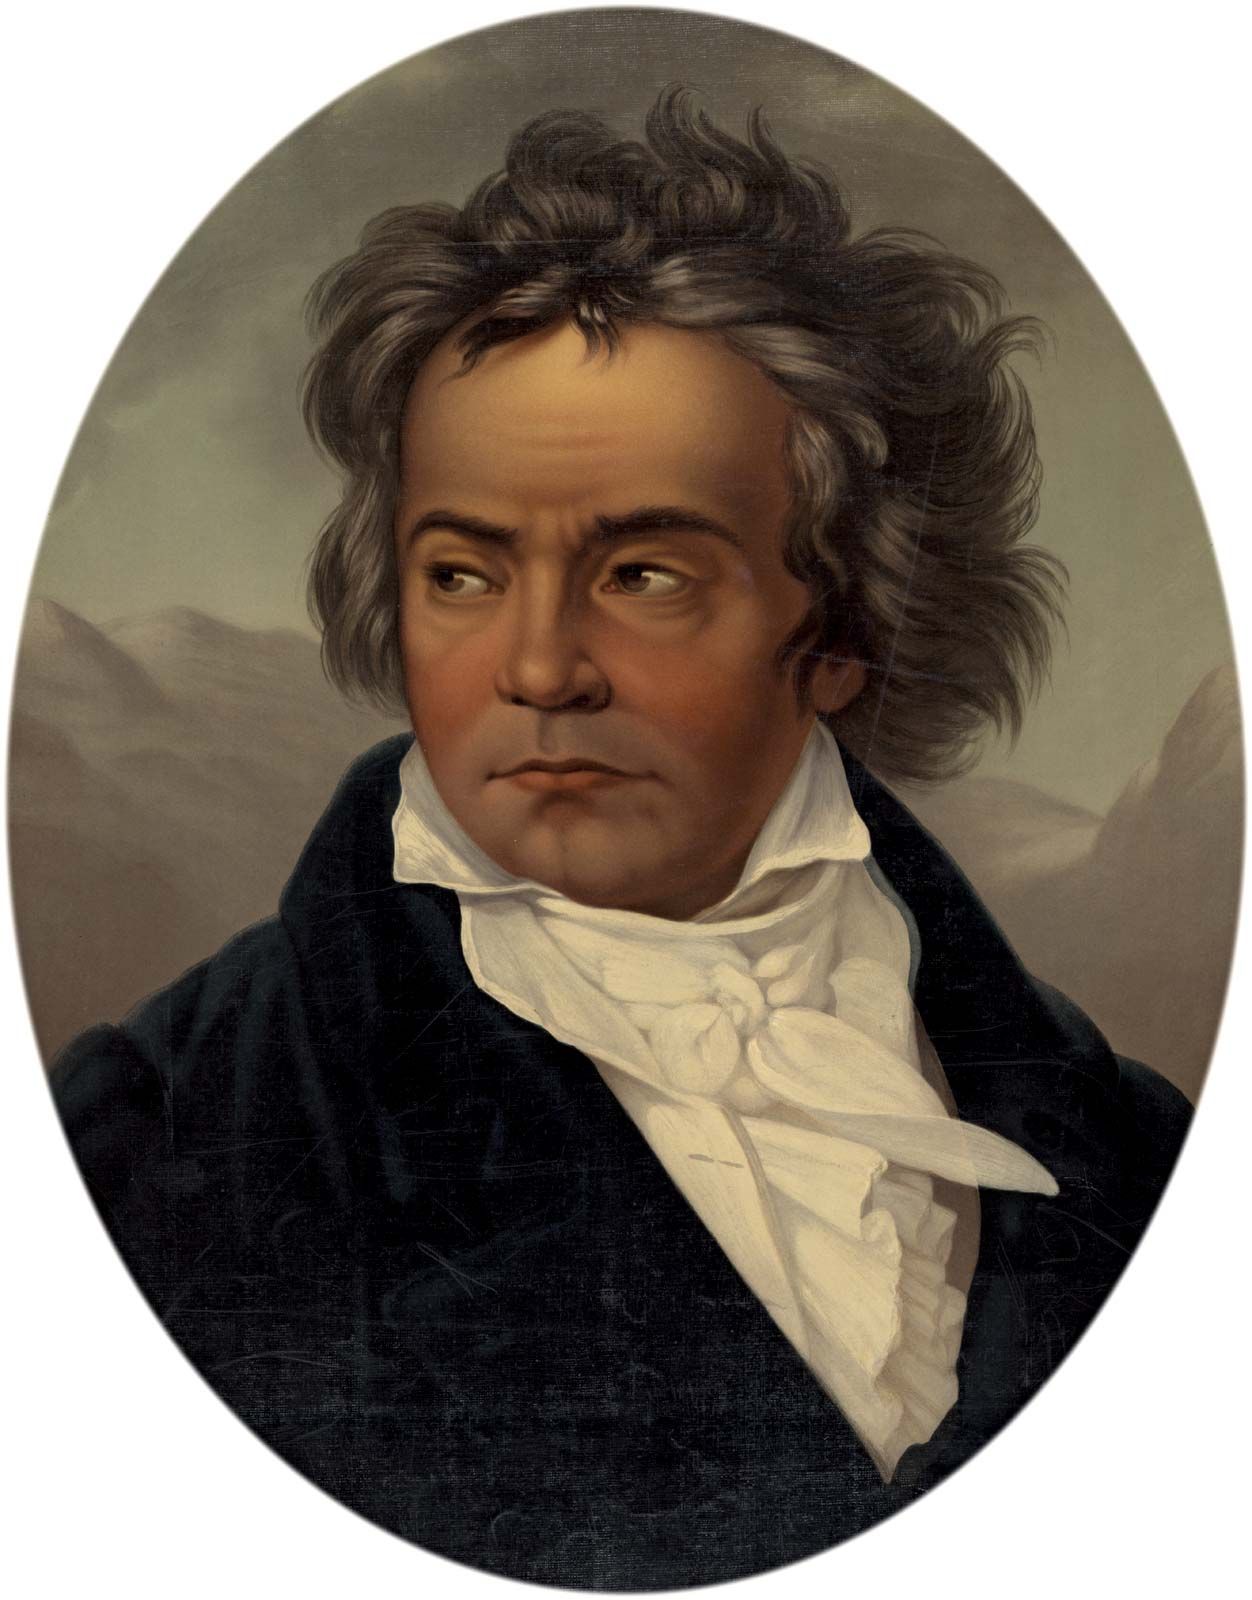  Ludwig Van Beethoven Hintergrundbild 1252x1600. Ludwig van Beethoven. Biography, Music, & Facts